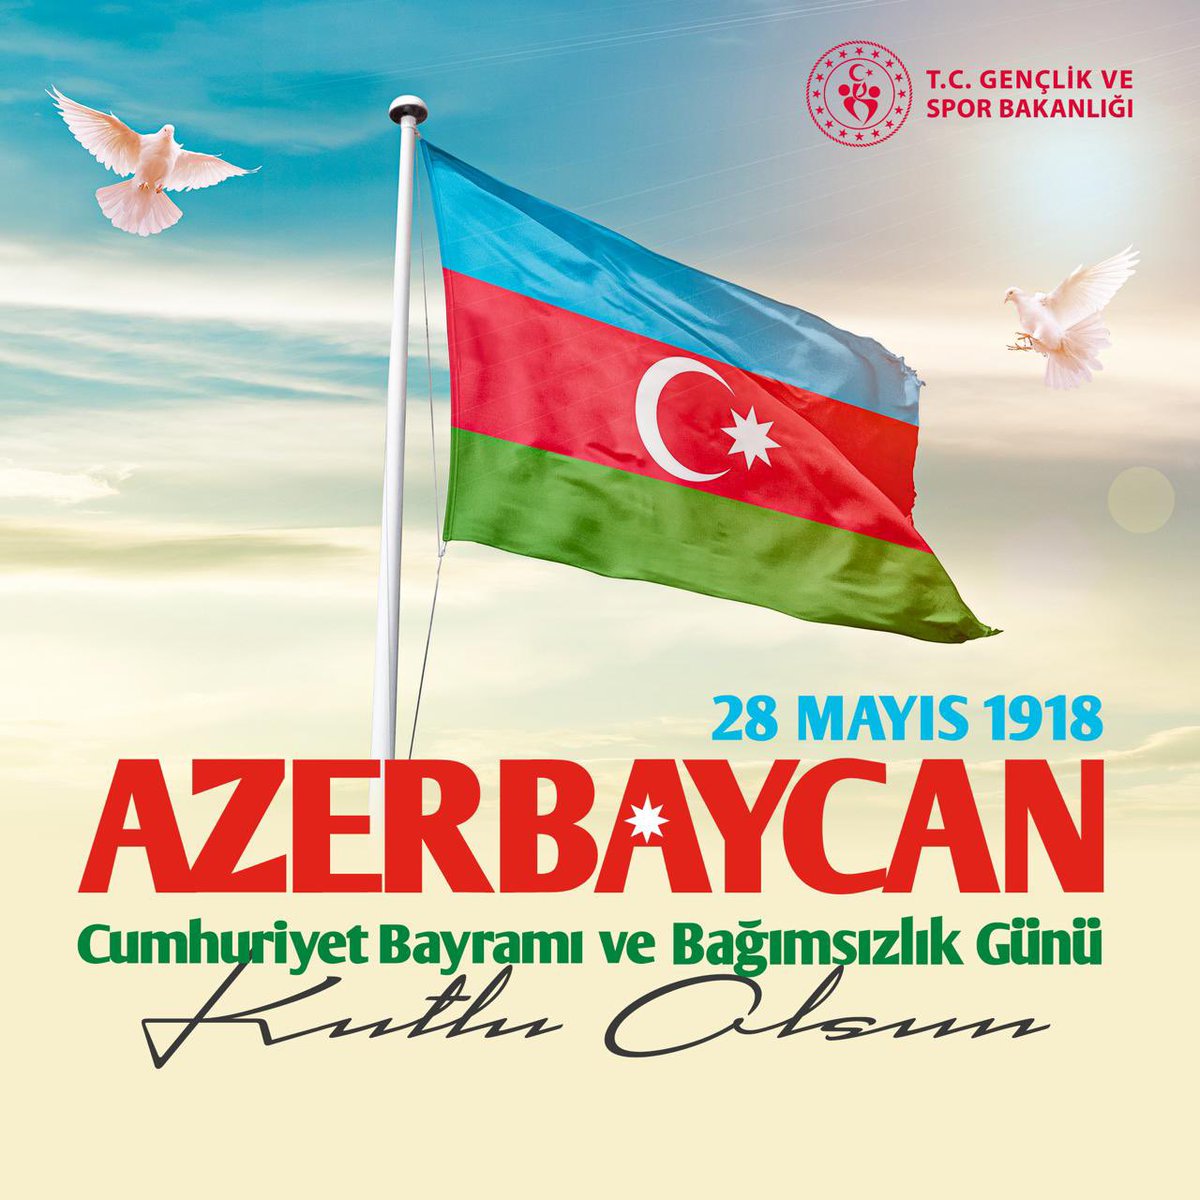 Mehmet Emin Resulzade'nin 'Bir kere yükselen bayrak bir daha inmez' dediği bayrak göklerde her daim var olsun. Can Azerbaycan'ın bağımsızlığının 106. yılı kutlu; birliğimiz ve kardeşliğimiz bâki olsun. 🇹🇷🇦🇿